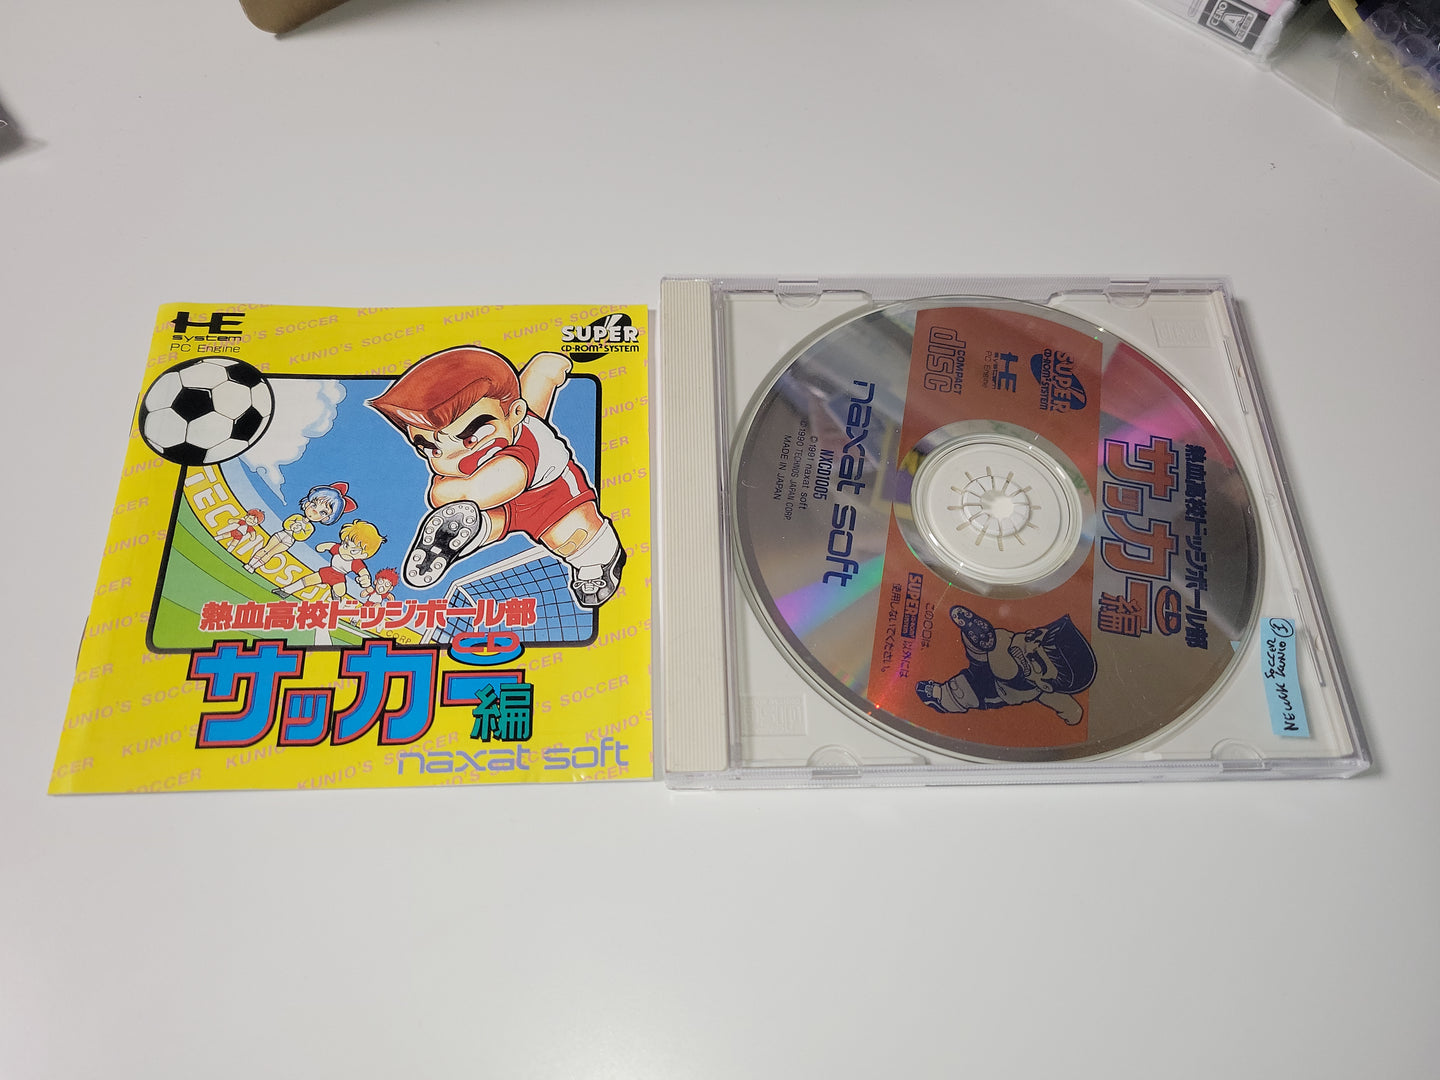 Nekketsu Koukou Dodgeball Bu: CD Soccer Hen - Nec Pce PcEngine